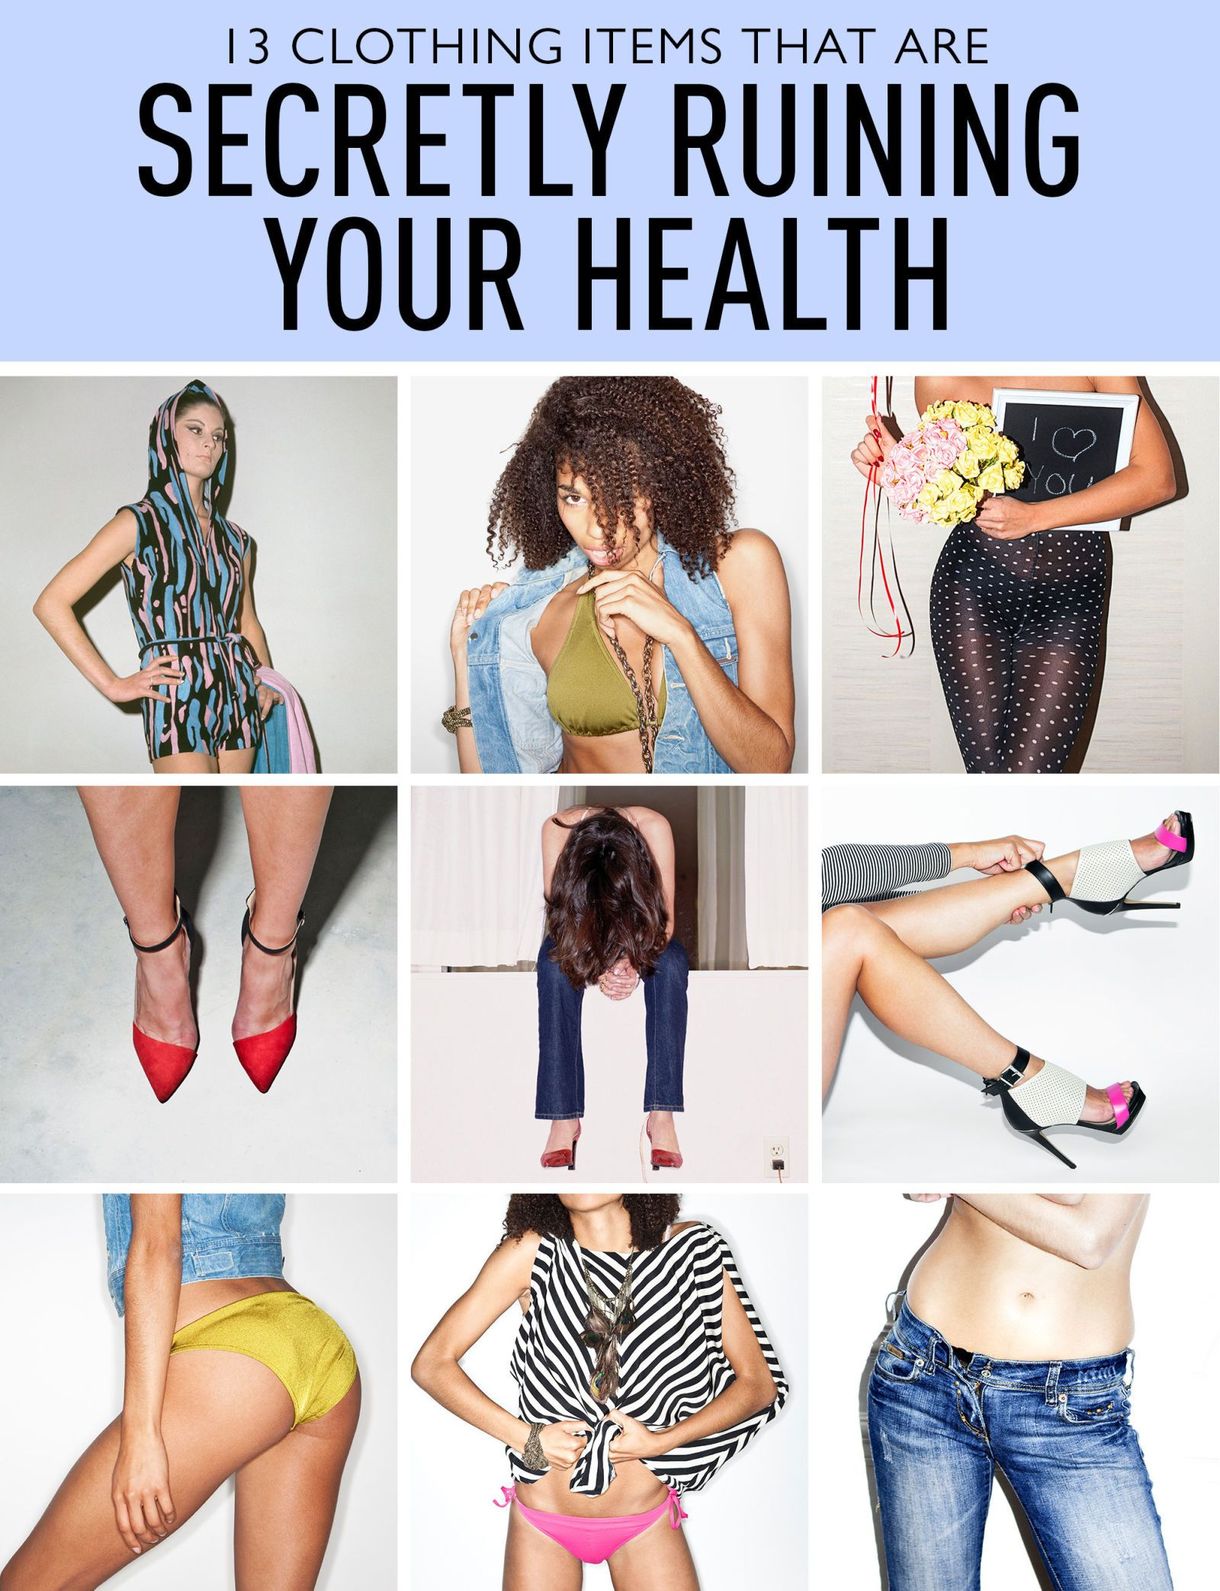 13 klesvarer som i hemmelighet ødelegger helsen din